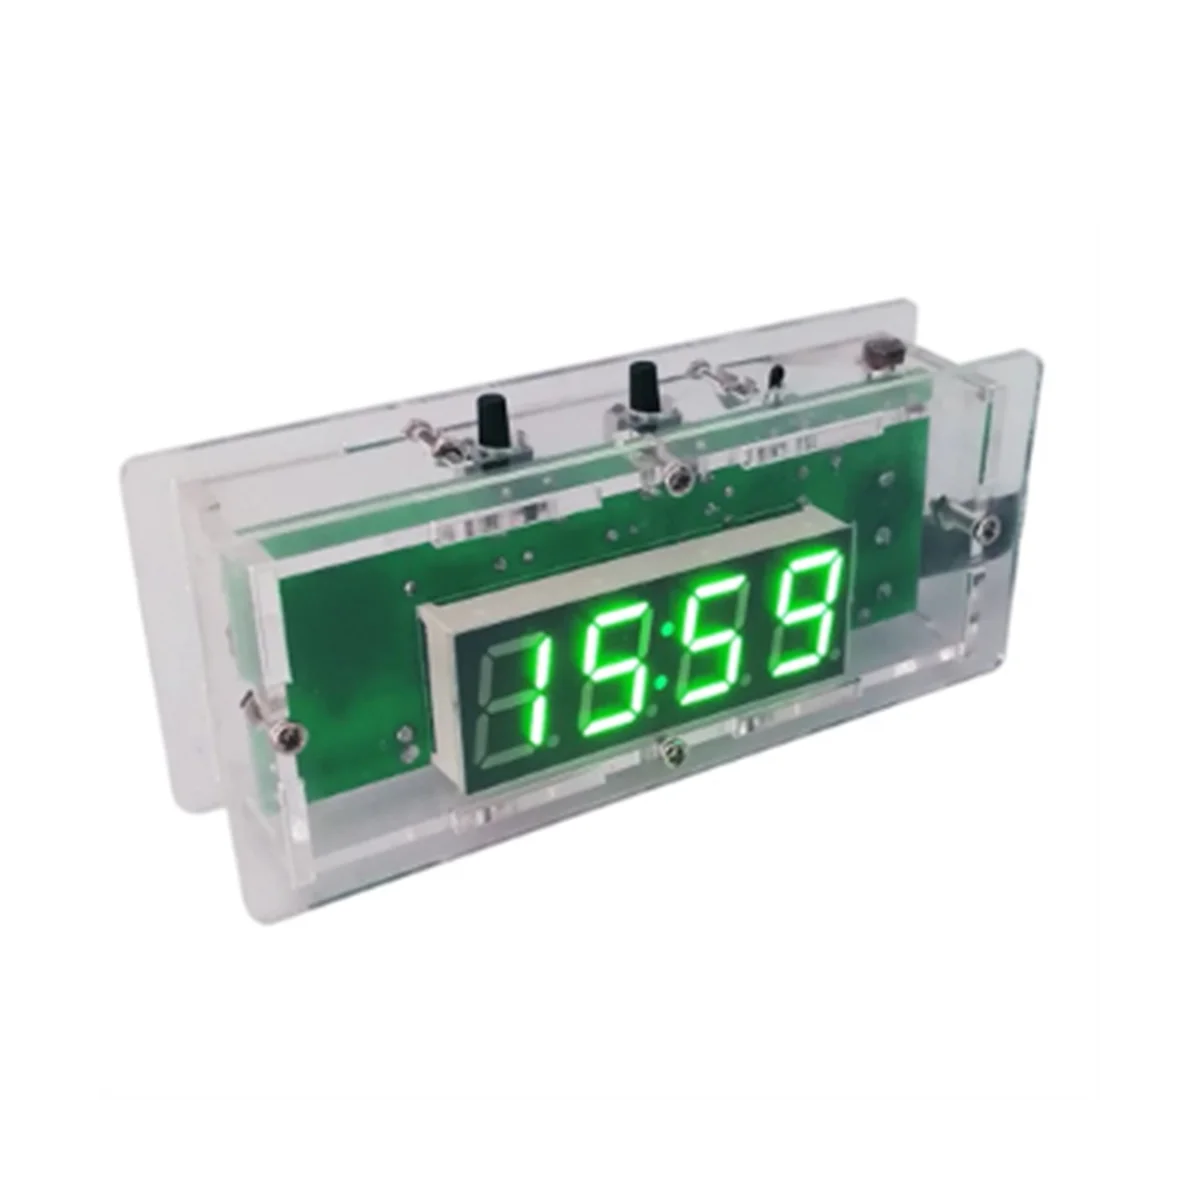 

Цифровые электронные часы, комплект для самостоятельной сборки, дисплей температуры/времени, будильник, 0,56 дюйма, 4 бит, DC 5 В, паяльный компл...